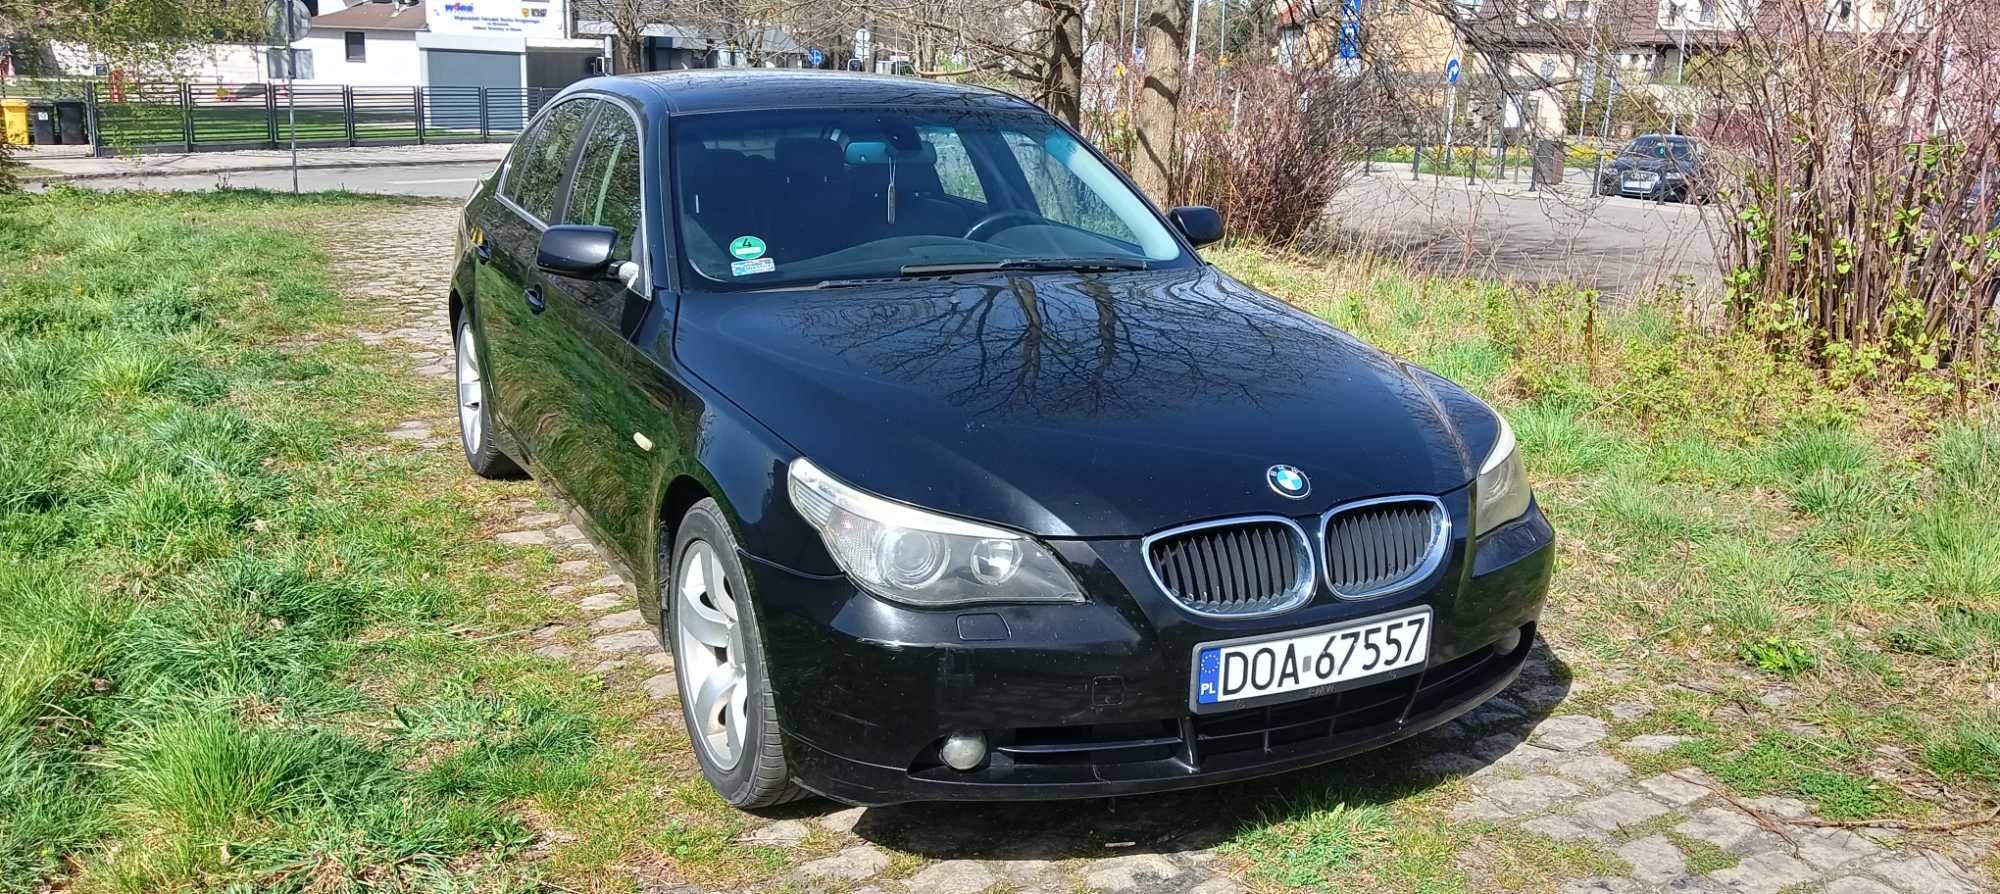 BMW E 60 2.5 diesel